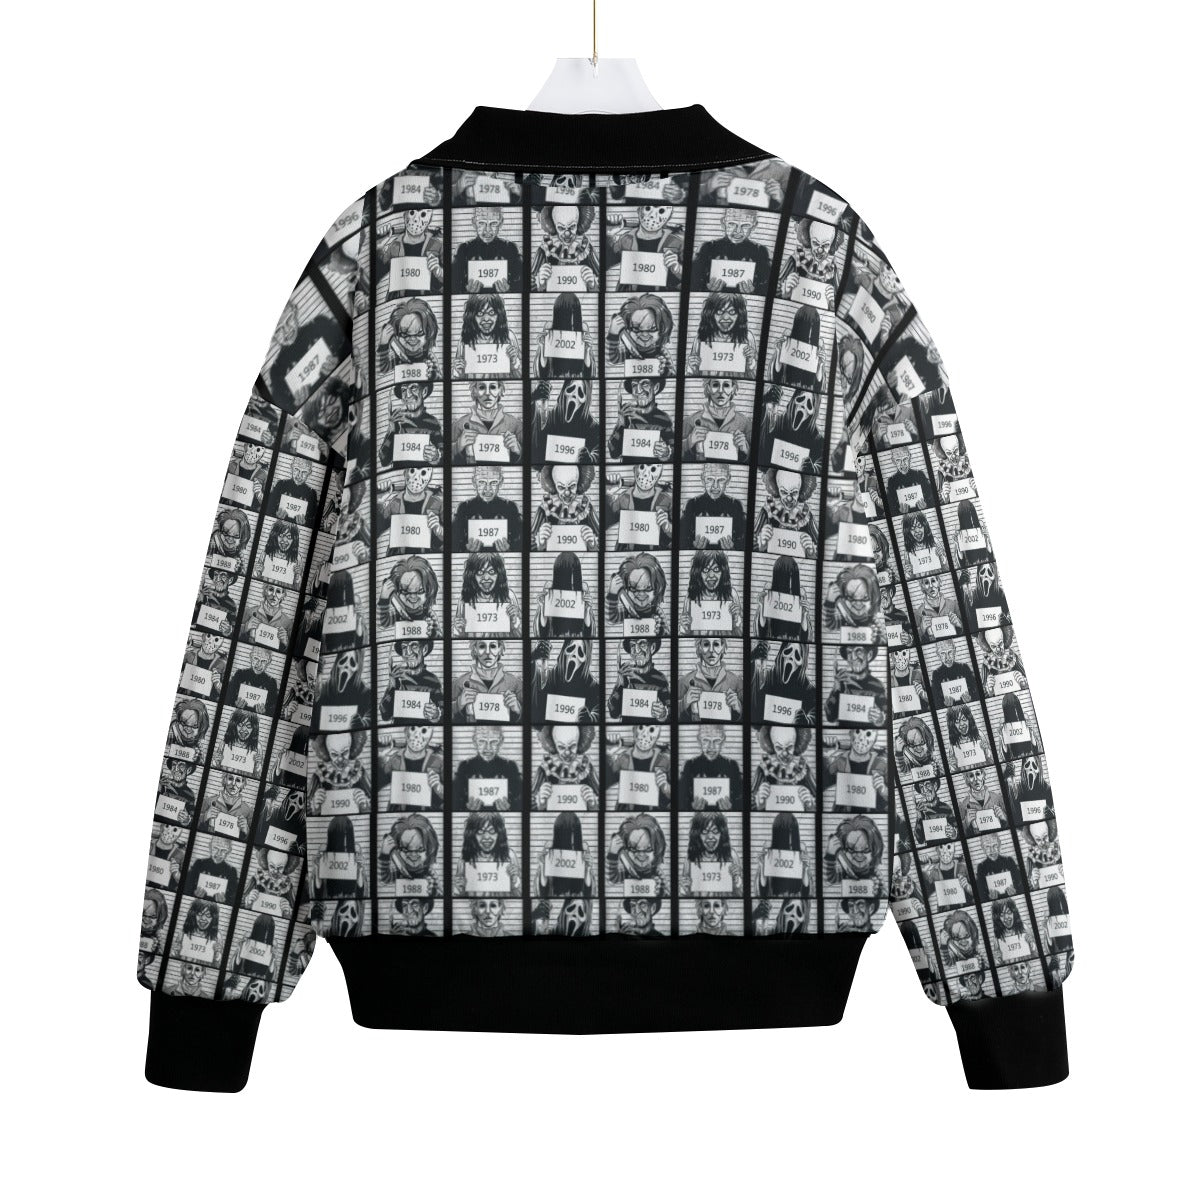 Jailhouse Knitted Fleece Lapel Outwear